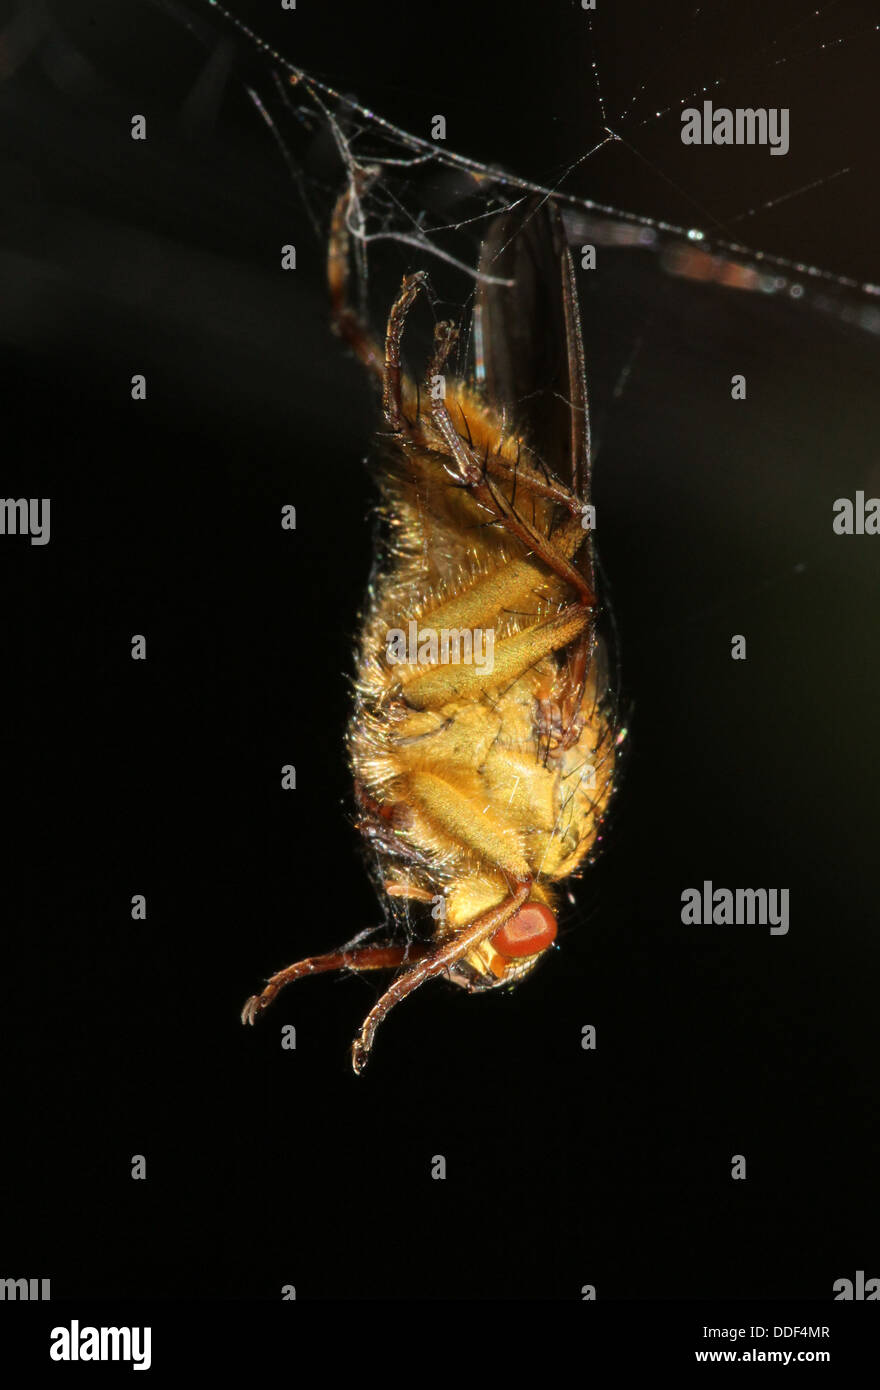 La bouse d'or jaune ou voler (Scatophaga stercoraria) pris dans un accrochage spider web Banque D'Images